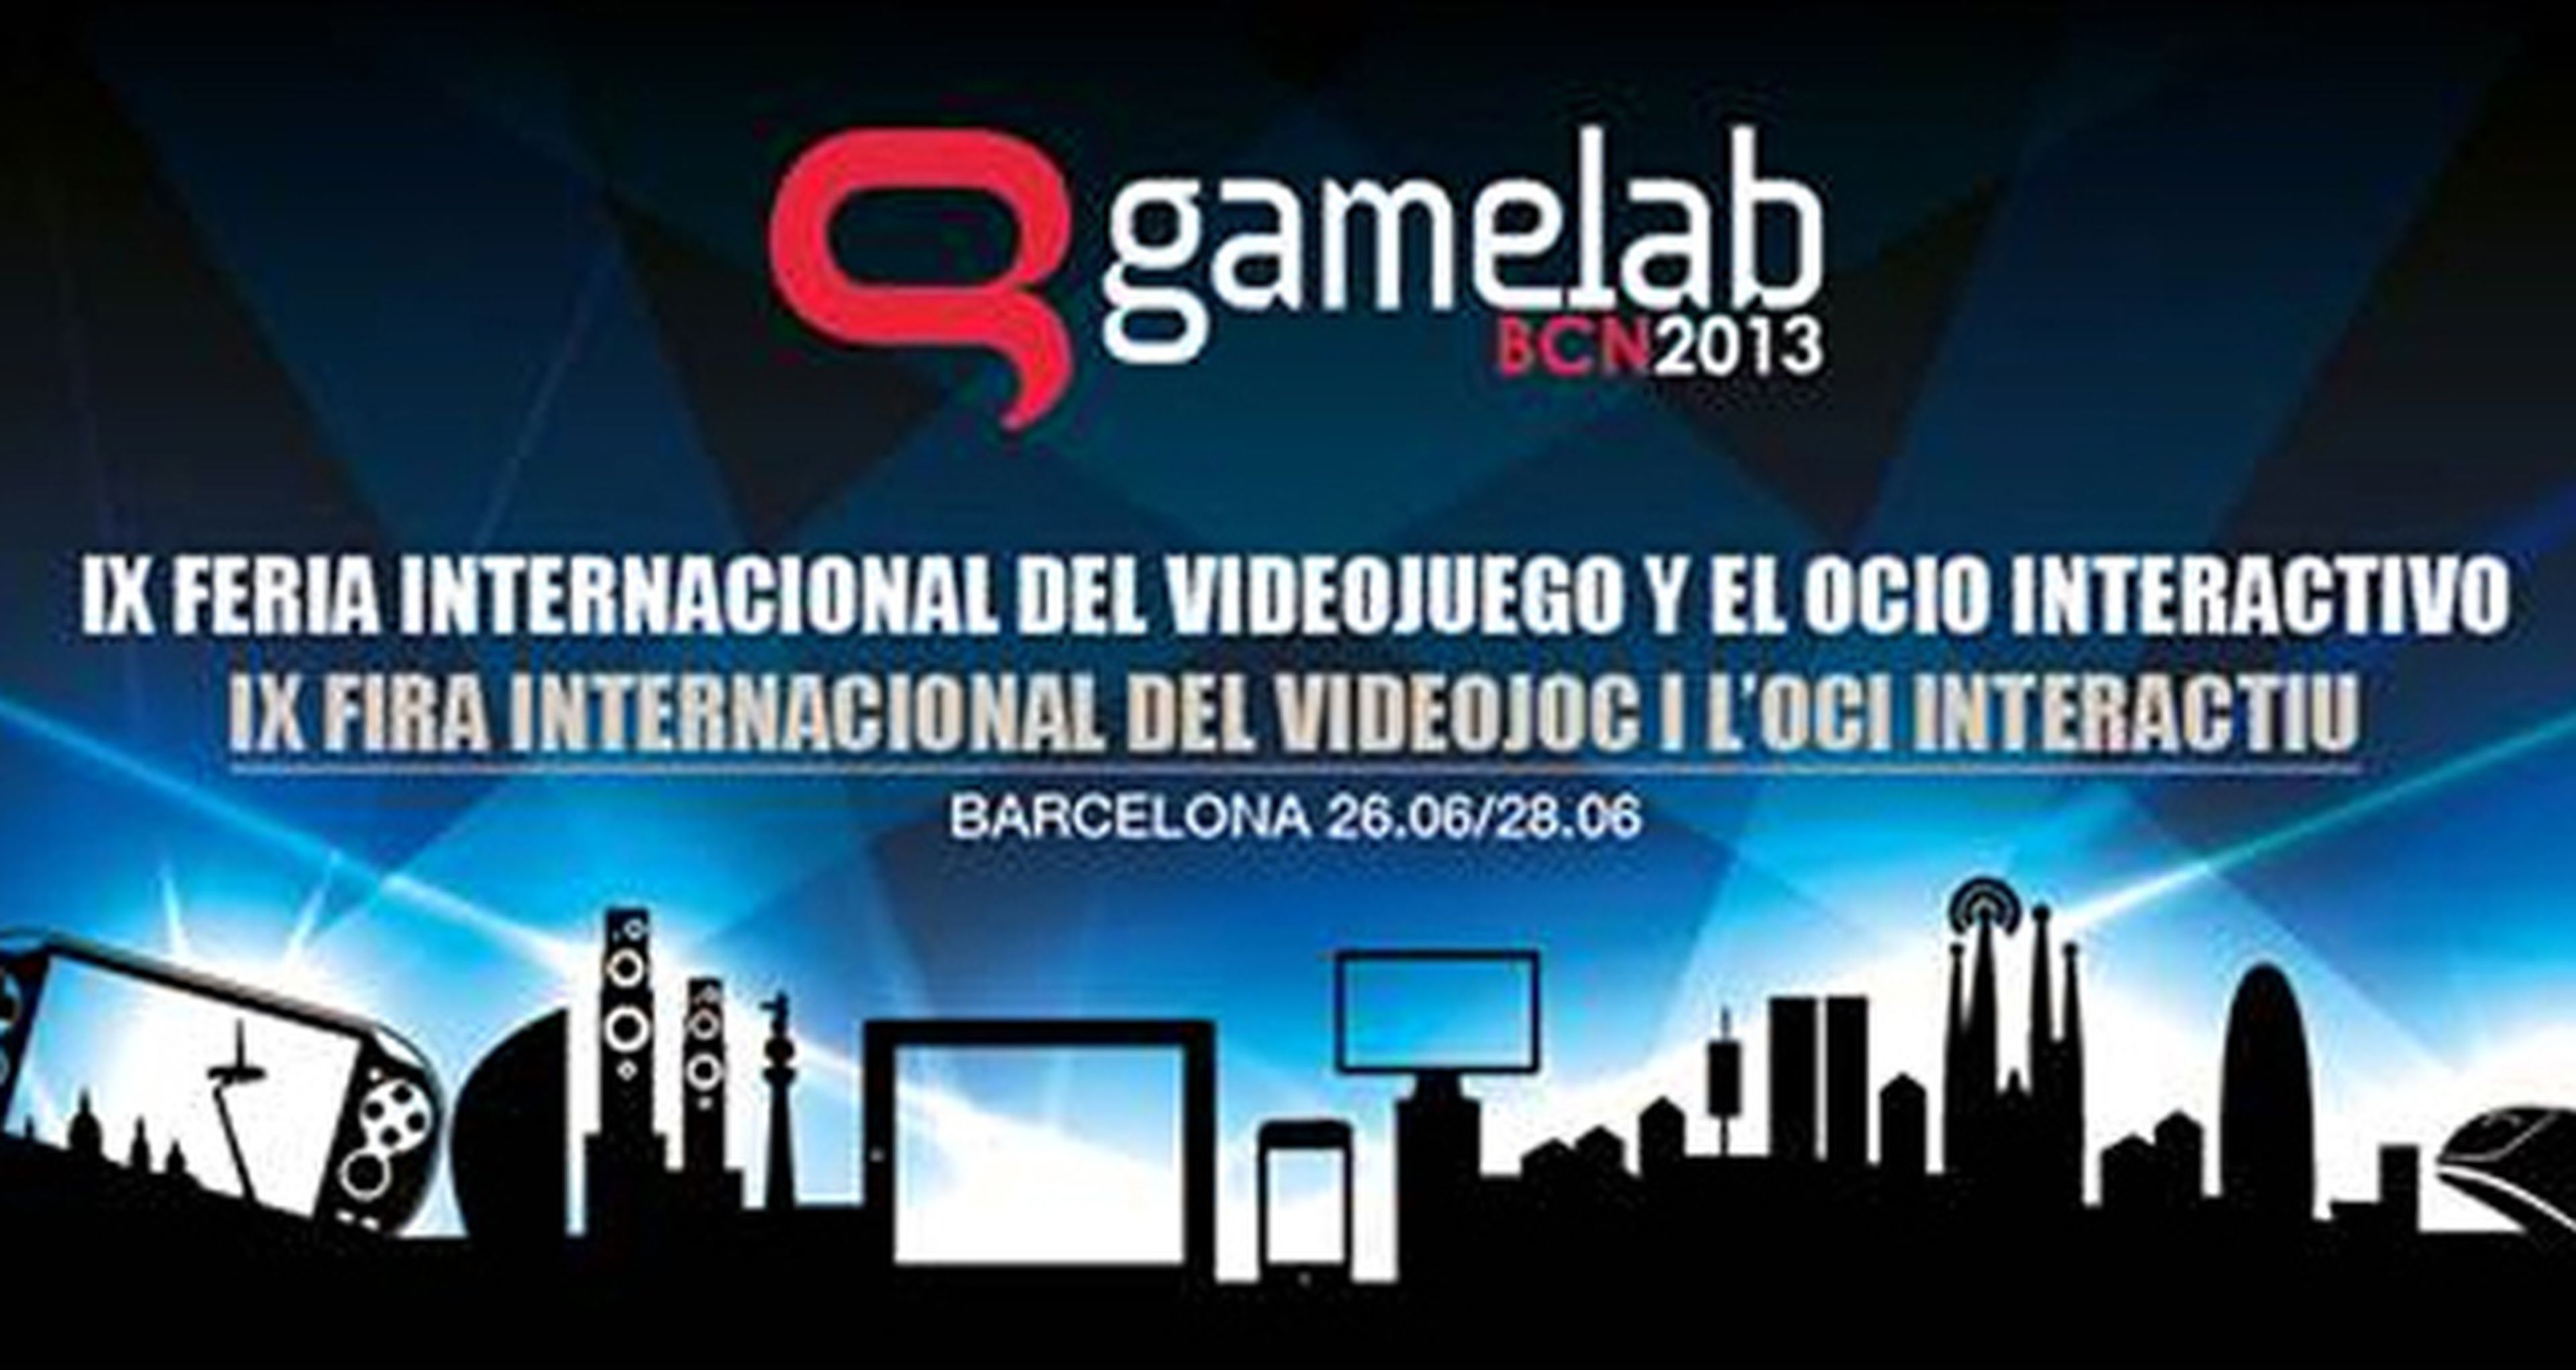 Gamelab 2013, del 26 al 28 de junio, en Barcelona